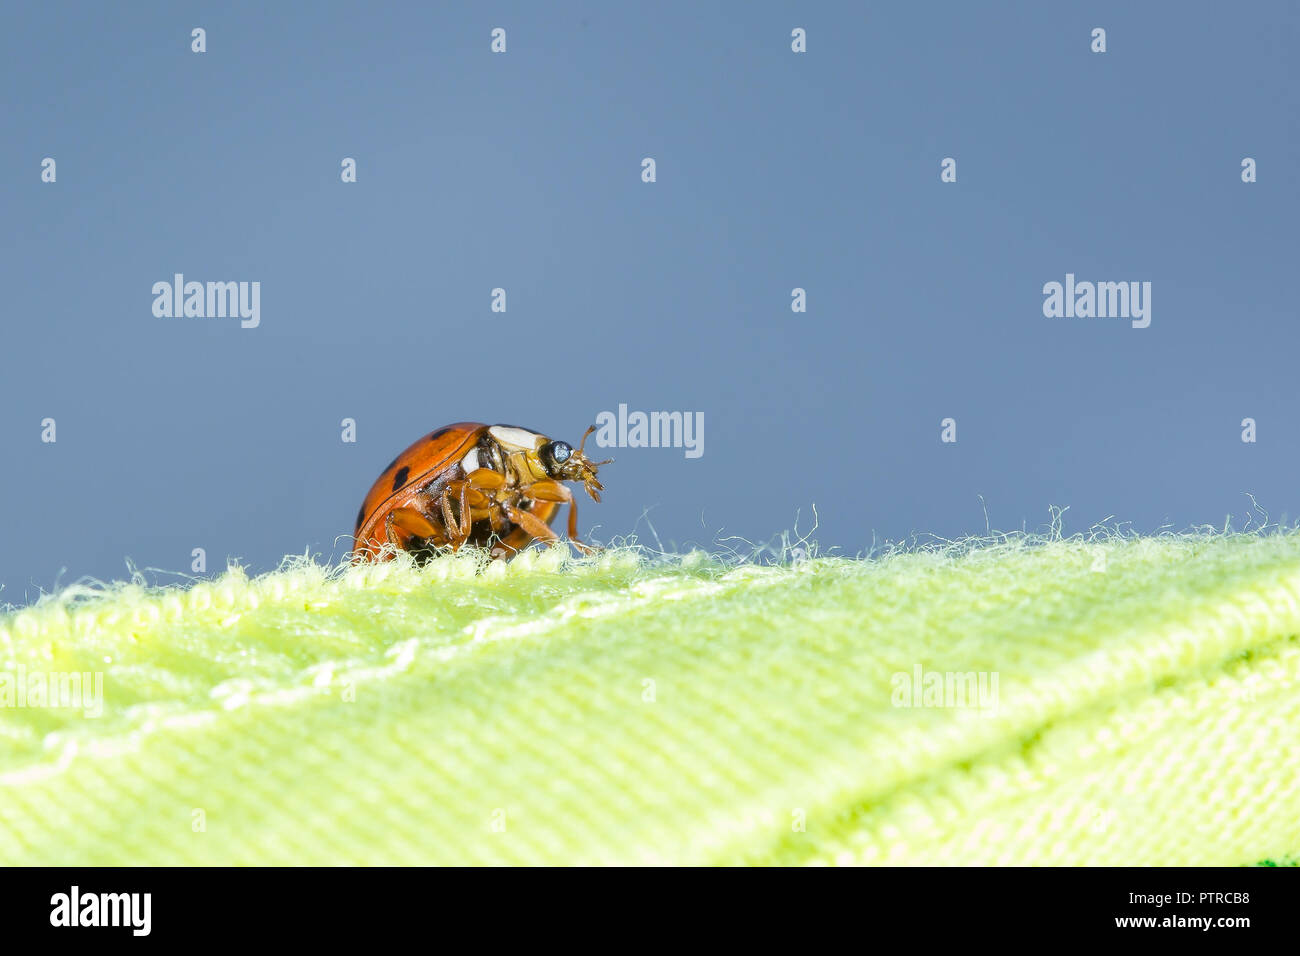 Macro primer plano de ladybird salvaje Reino Unido ladybug (visto desde abajo) aislado al aire libre en el jardín arrastrándose en primer plano tejido verde, cielo azul de fondo Foto de stock